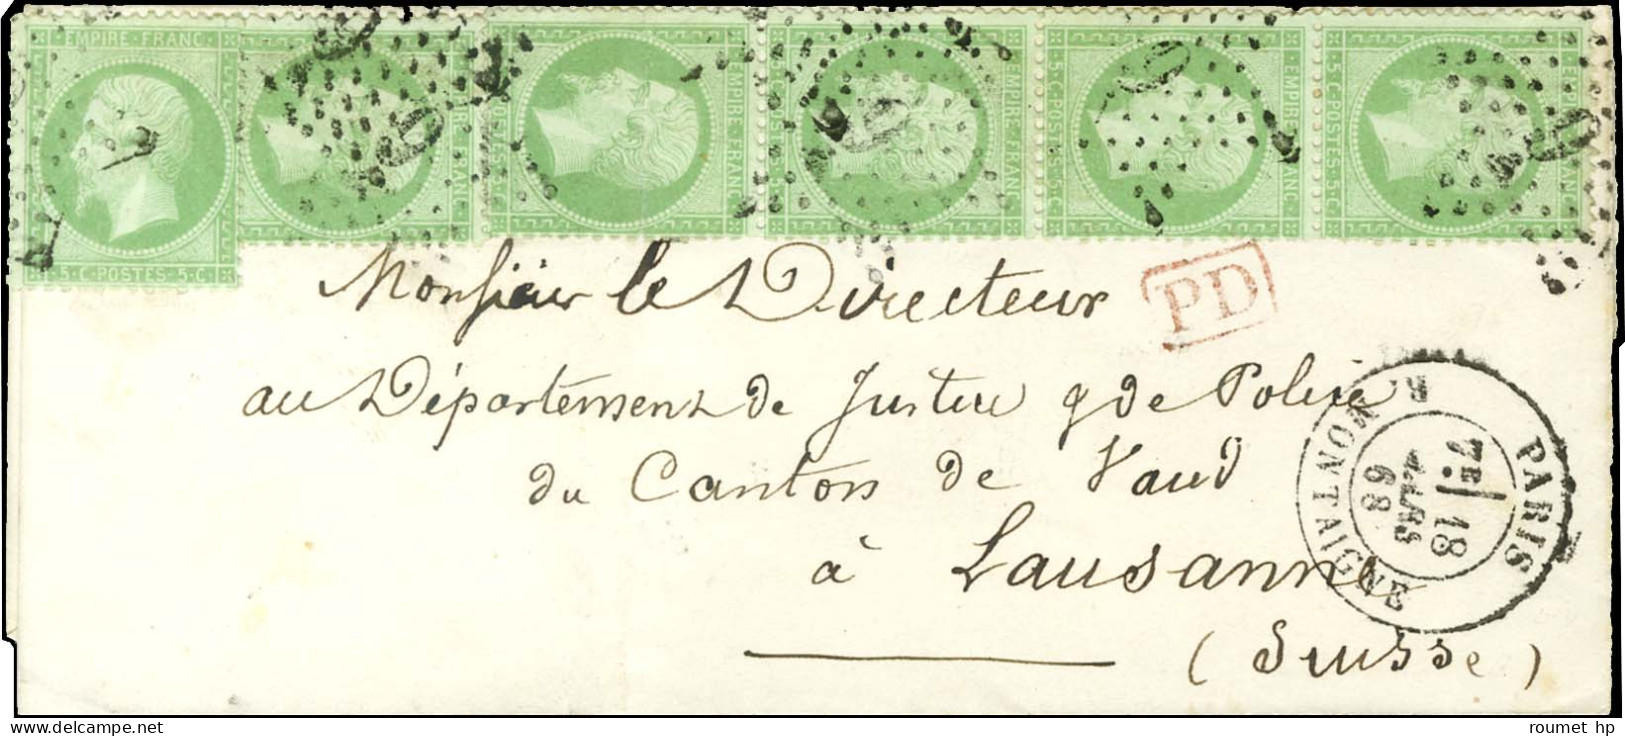 Etoile 9 / N° 20 Bande De 5 (1ex Léger Pli) + 1ex. Càd PARIS / R. MONTAIGNE Sur Lettre Pour Lausanne. 1868. - TB. - R. - 1862 Napoléon III